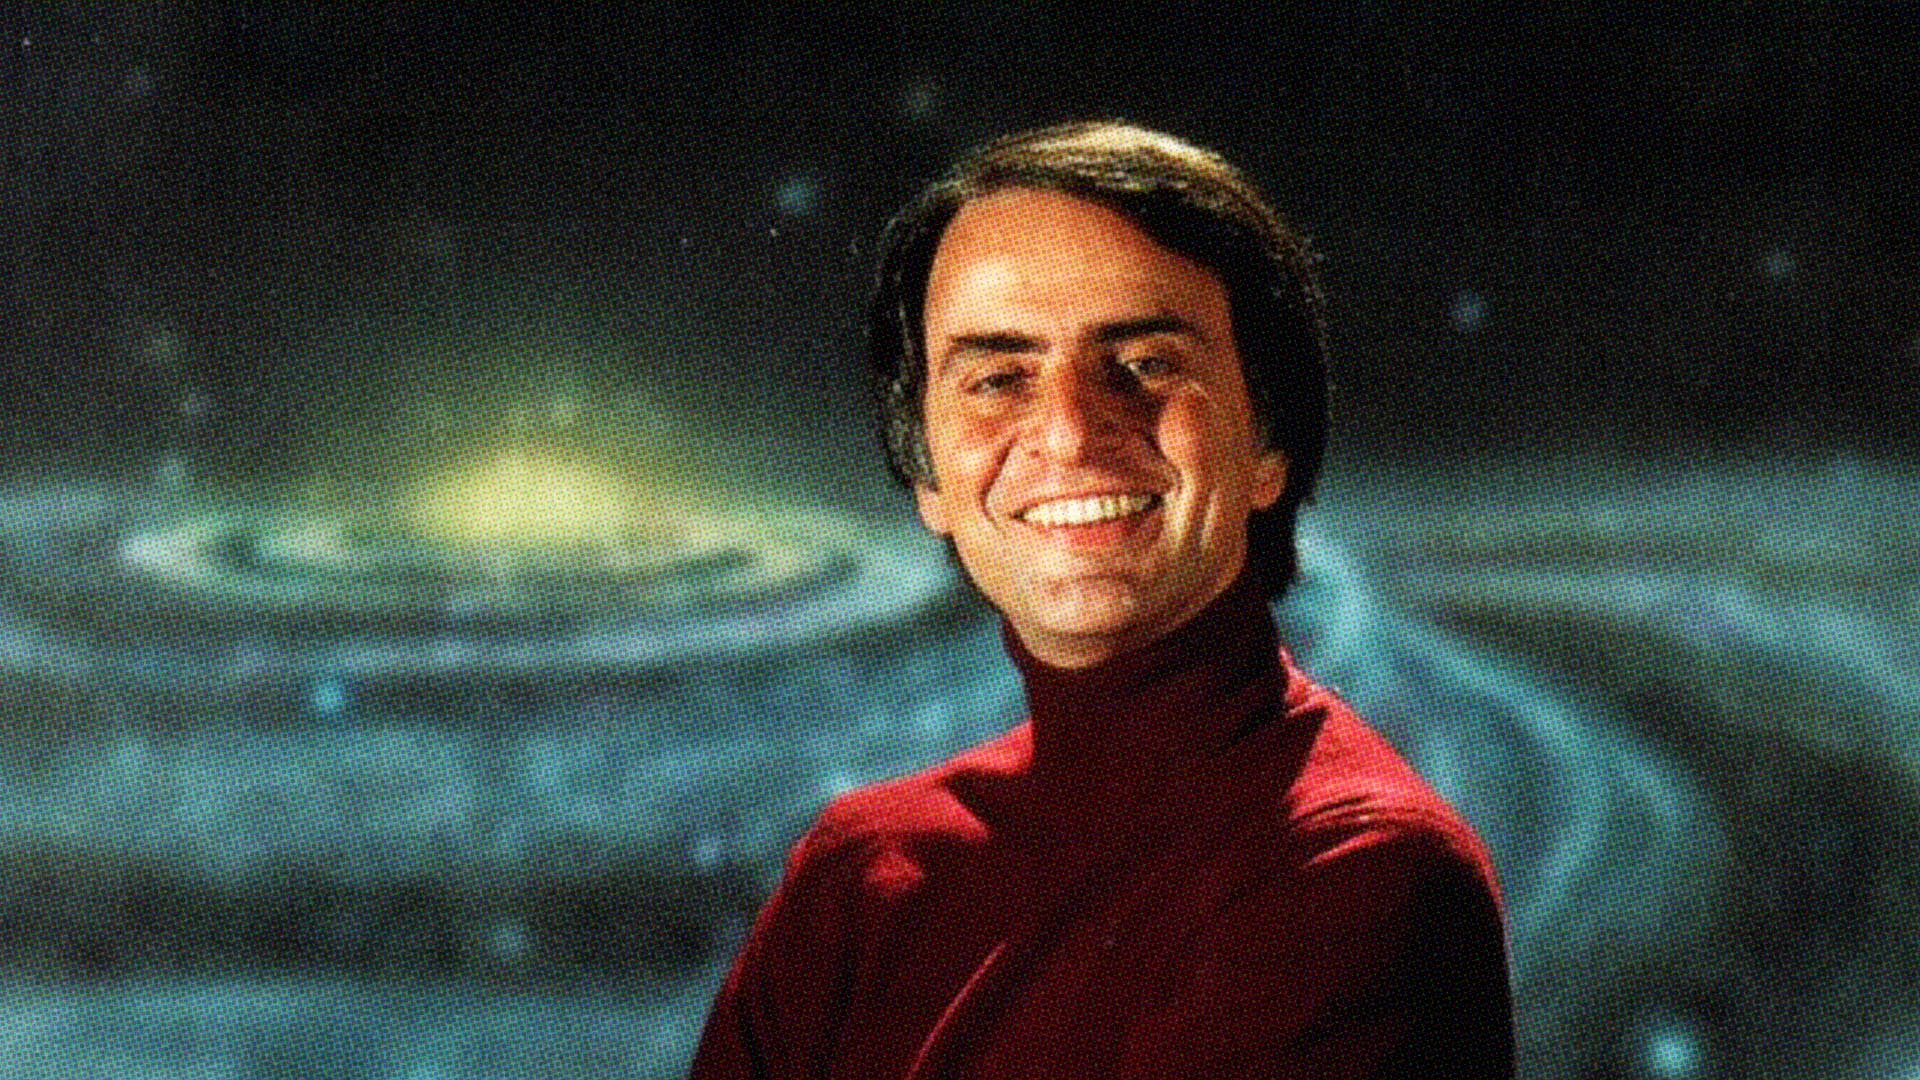 Ünlü astrofizikçi Carl Sagan'ın aynı isimli romanından sinemaya uyarlanan film aşağıdakilerden hangisidir?